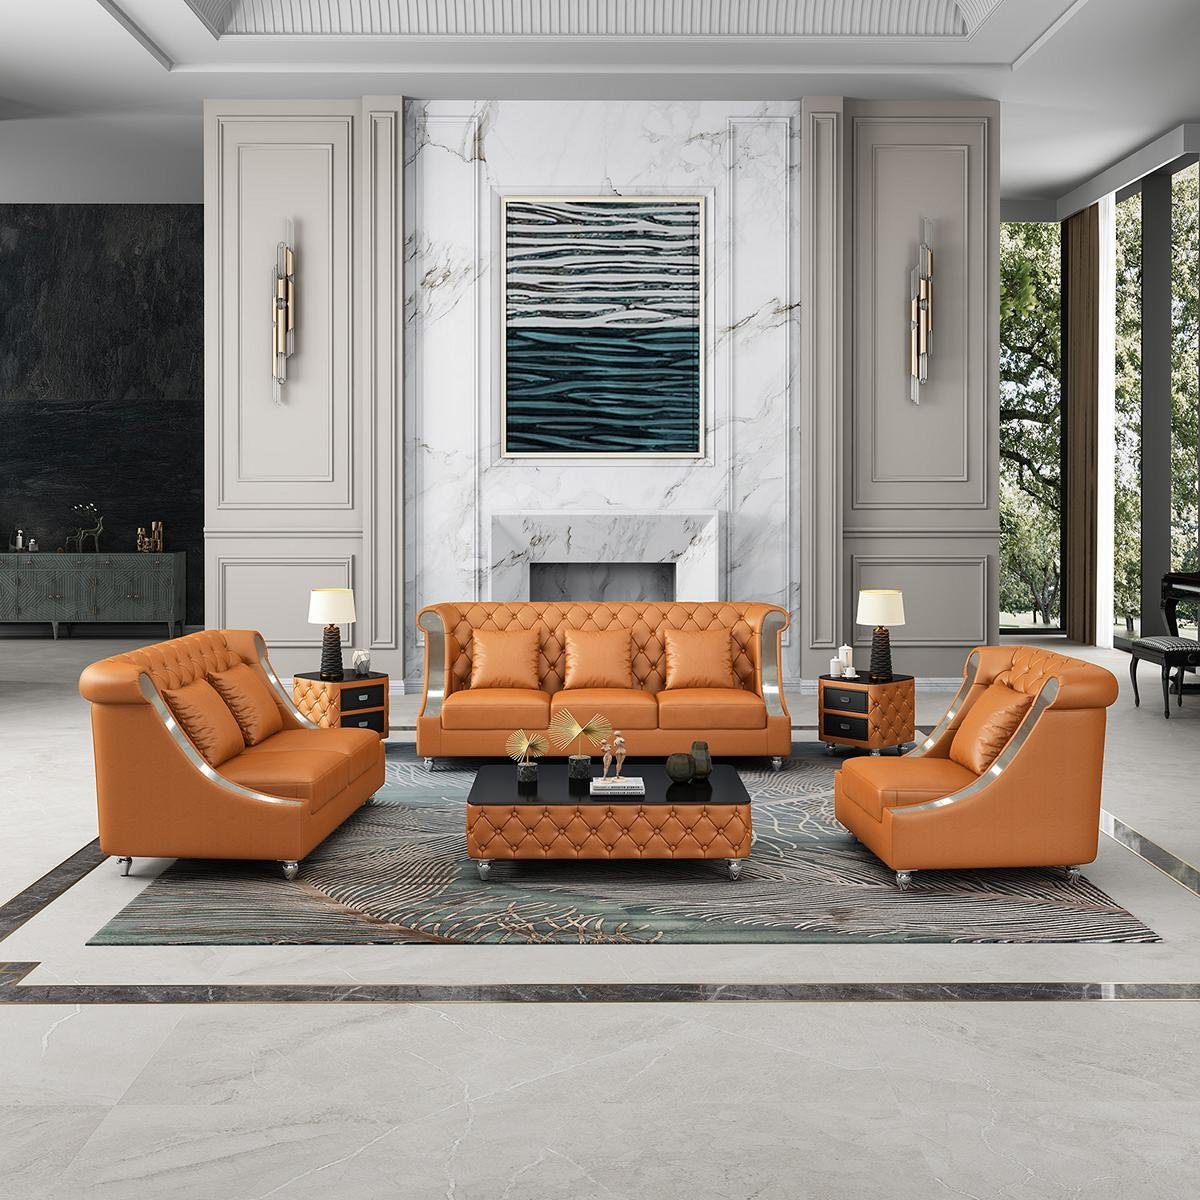 JVmoebel Wohnzimmer-Set, Ledersofa Couch Wohnlandschaft Garnitur Design Modern 3 1 Sitzer Orange